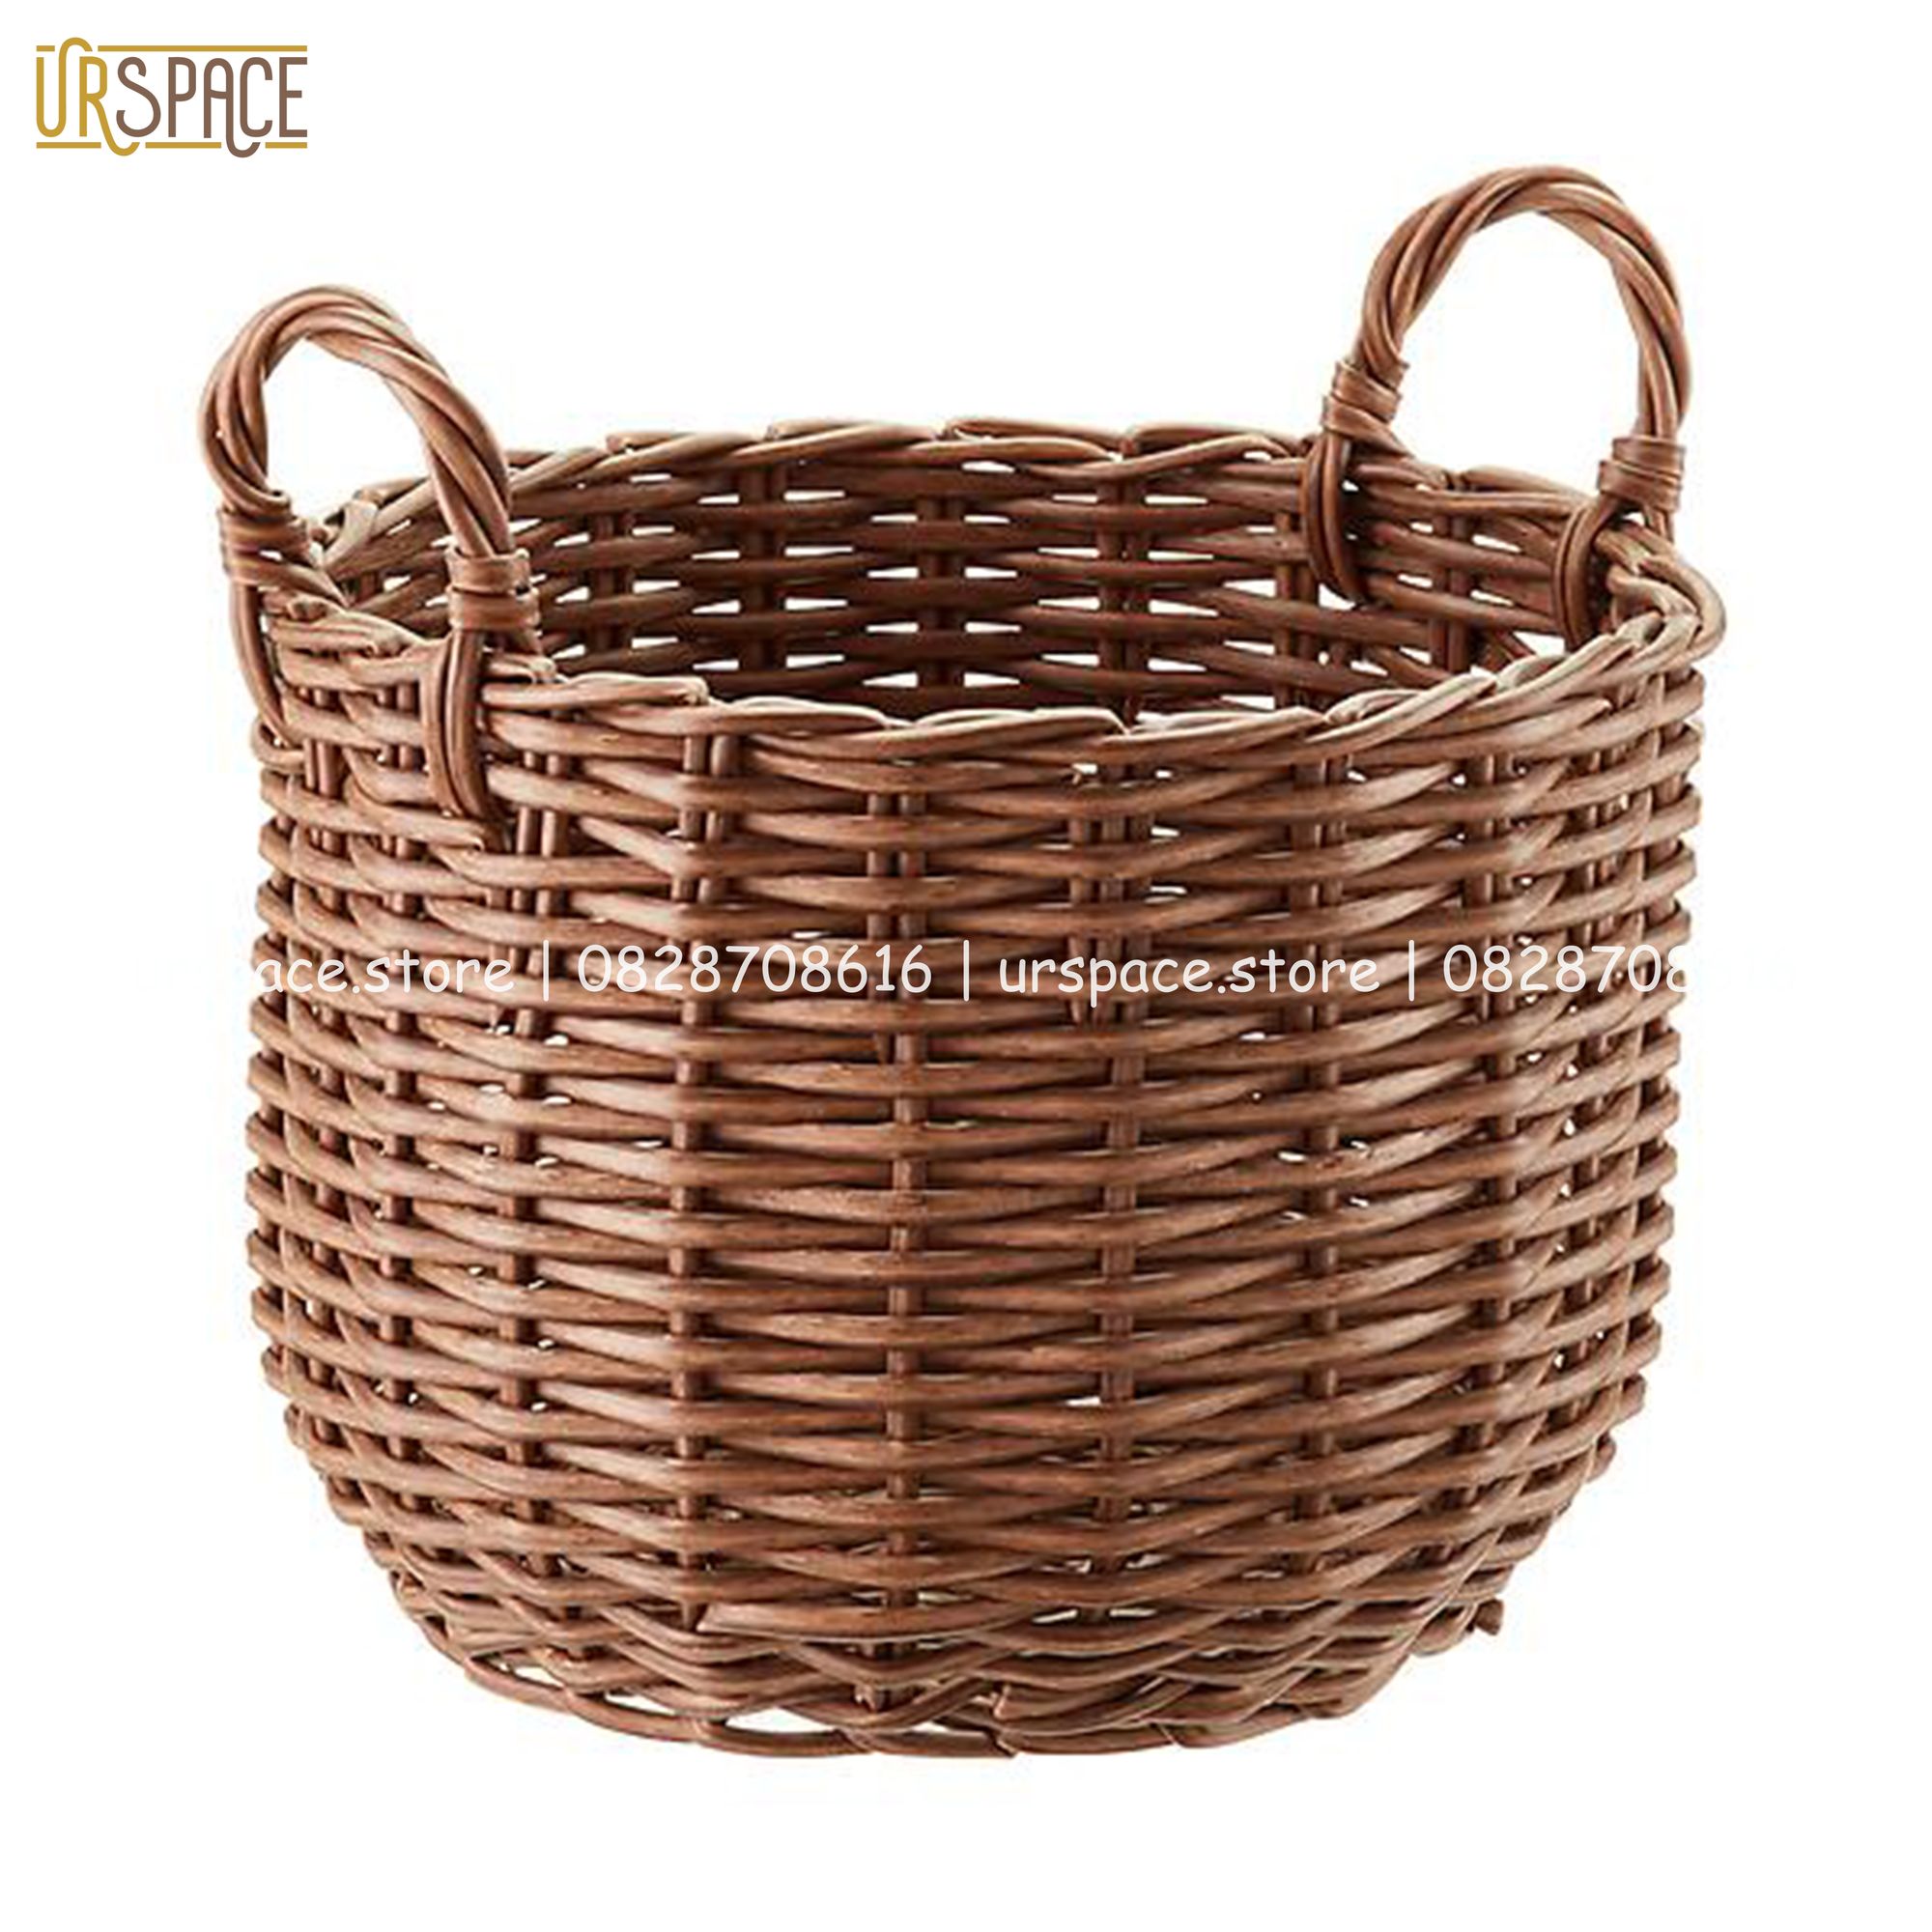 Sọt nhựa đựng quần áo, đồ chơi, trồng cây đa năng hình tròn có quai/ Hand-woven wicker round storage basket with handle